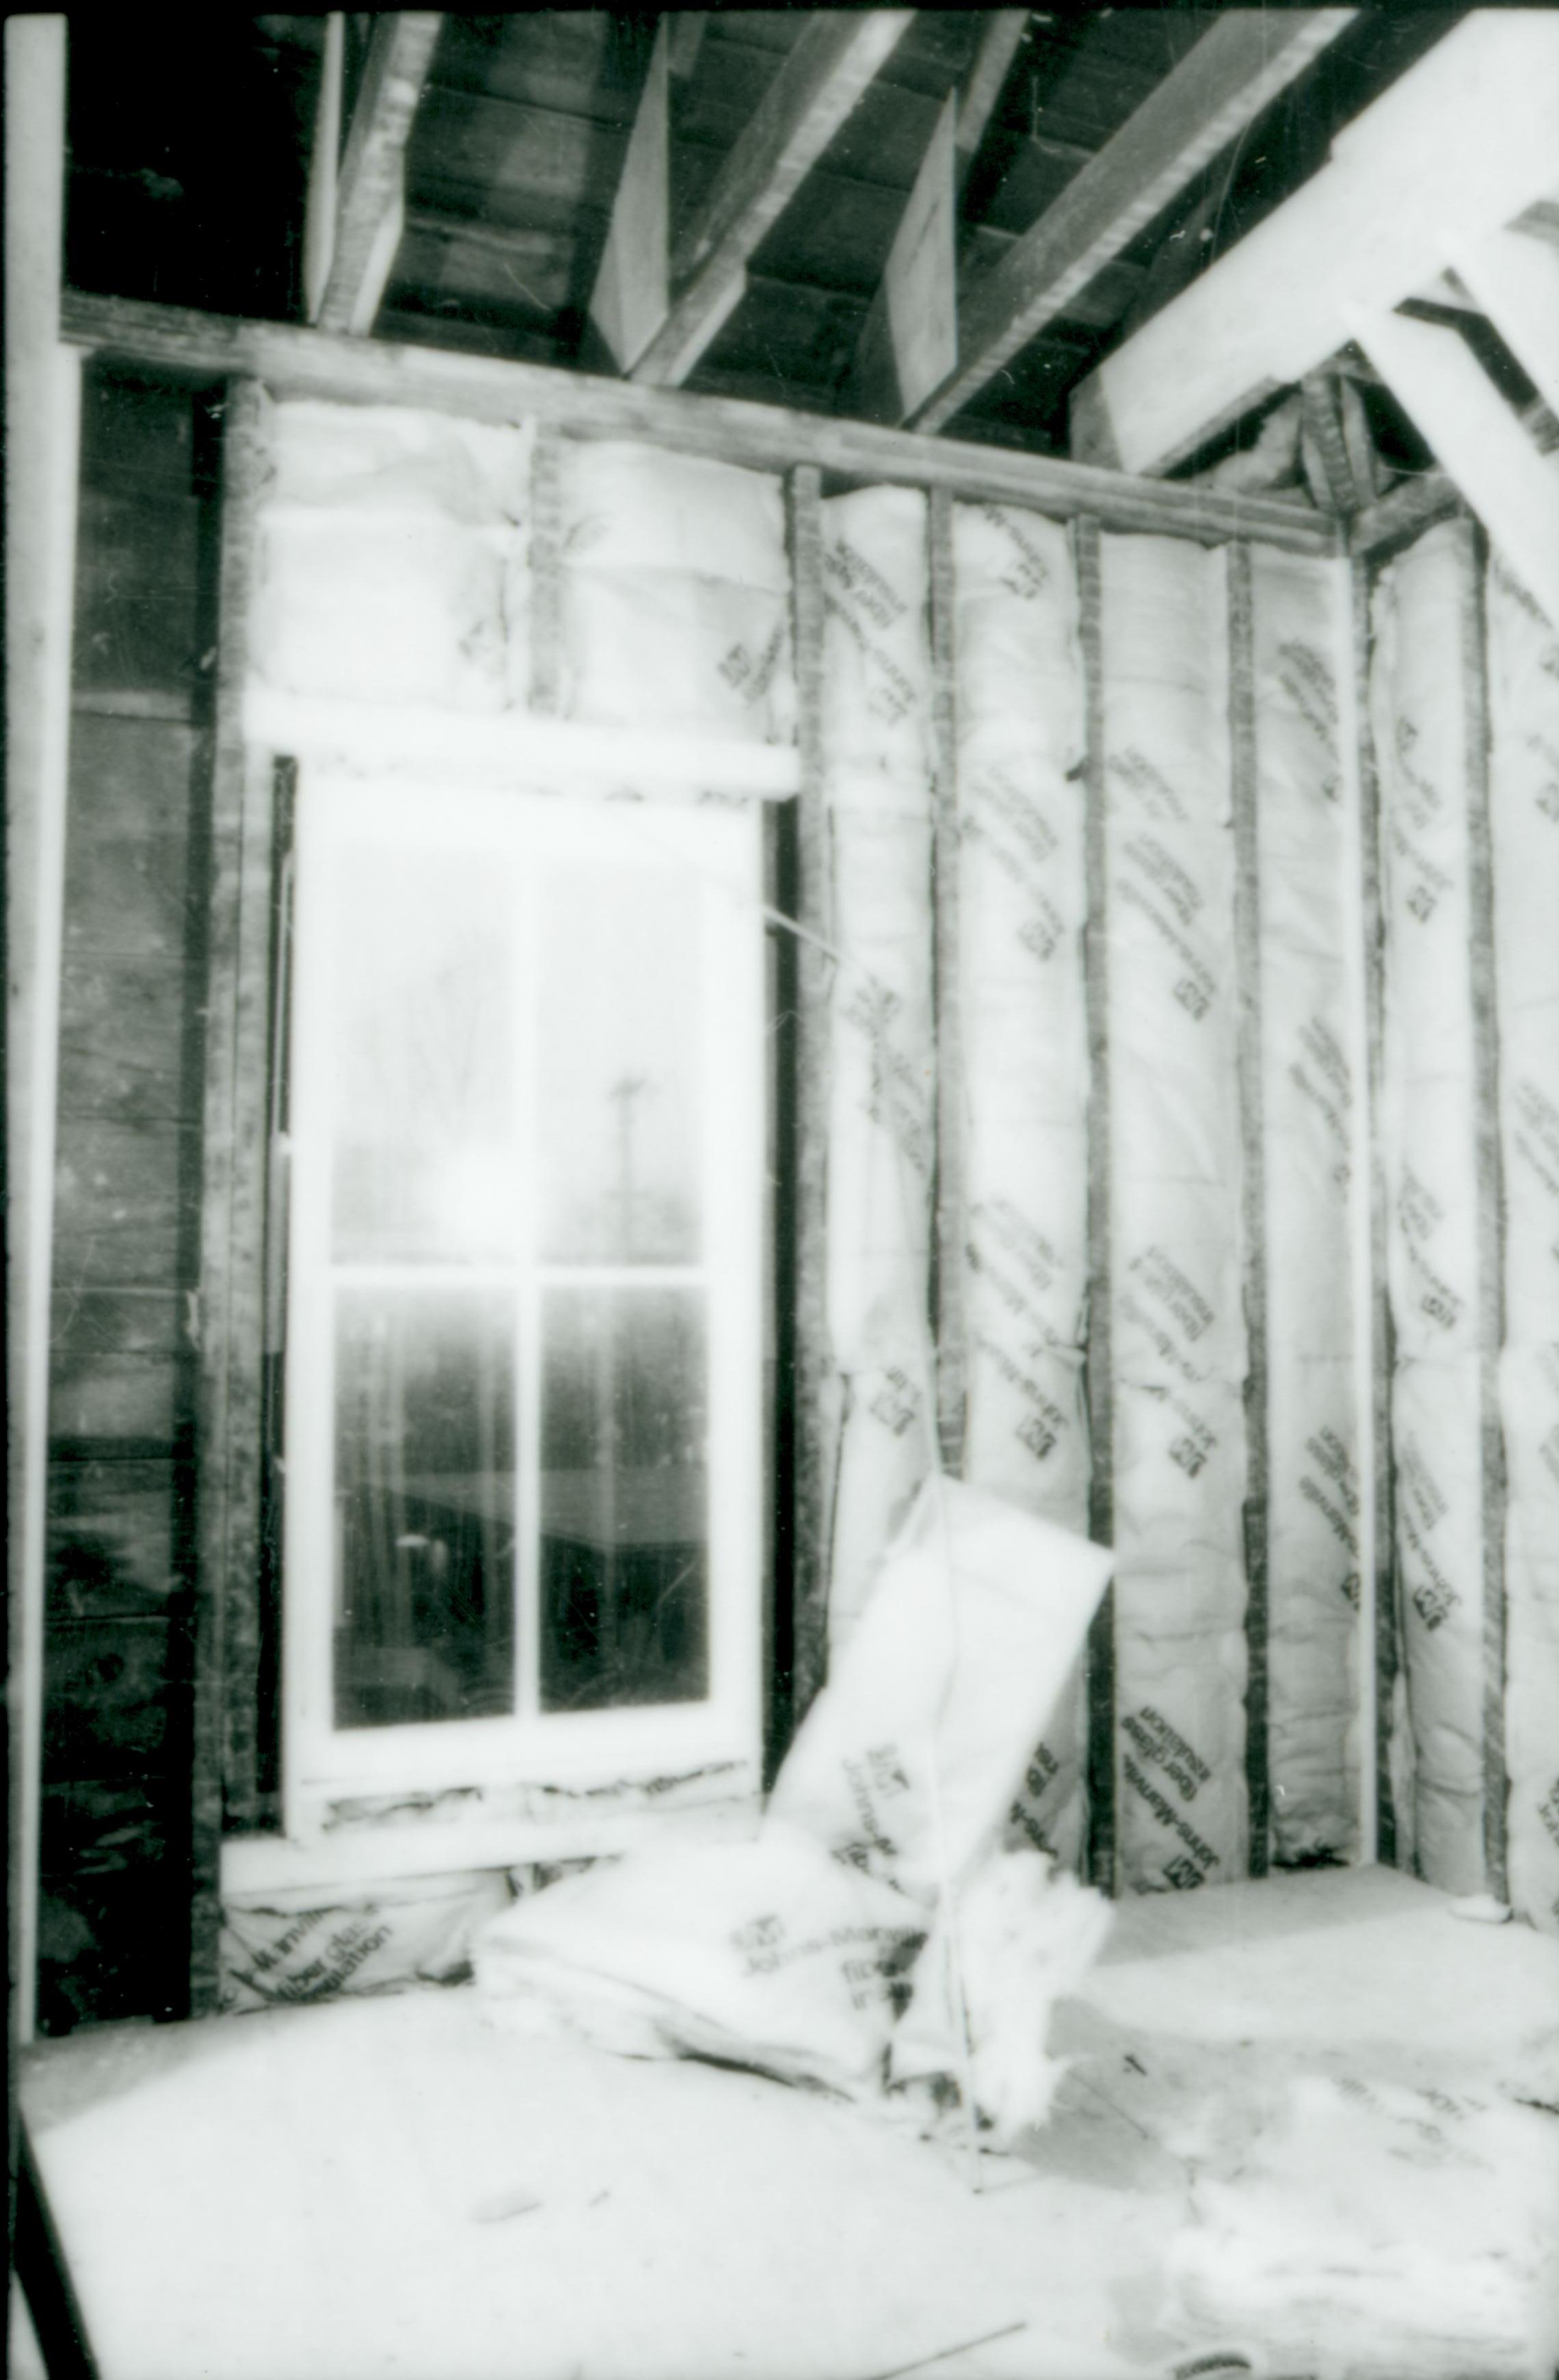 NA Restoration, Shutt, House, studs, insulation